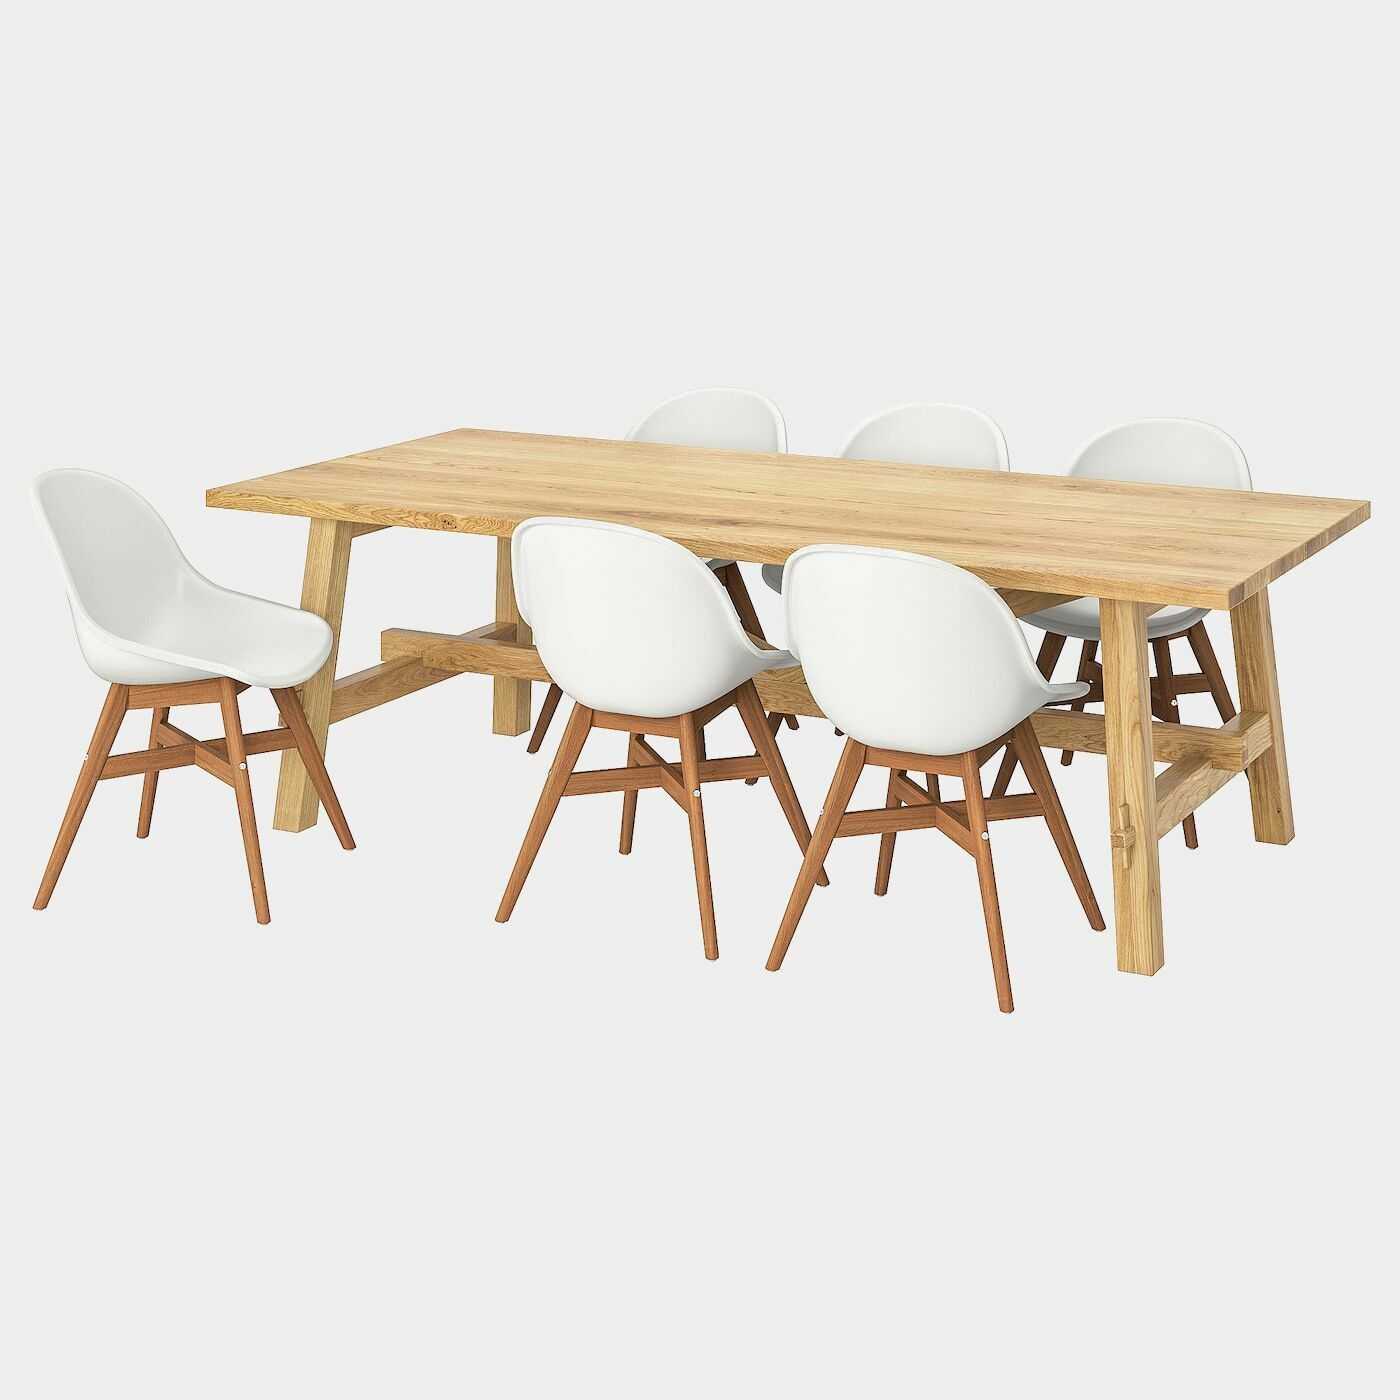 MÖCKELBY / FANBYN Tisch und 6 Stühle  - Essplatzgruppe - Möbel Ideen für dein Zuhause von Home Trends. Möbel Trends von Social Media Influencer für dein Skandi Zuhause.